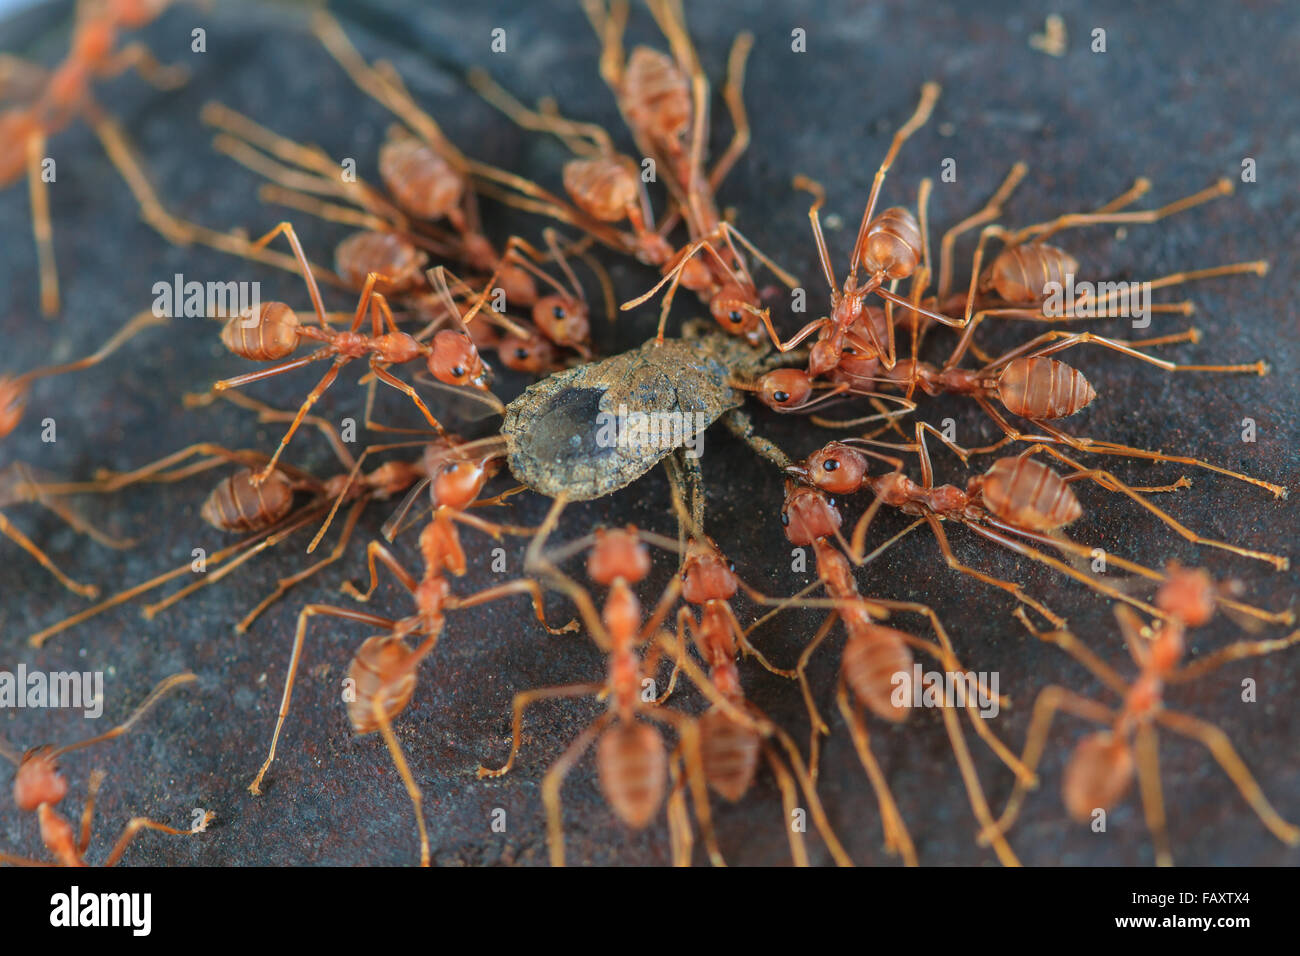 Les fourmis d'essayer de déplacer un insecte mort dans la forêt Banque D'Images